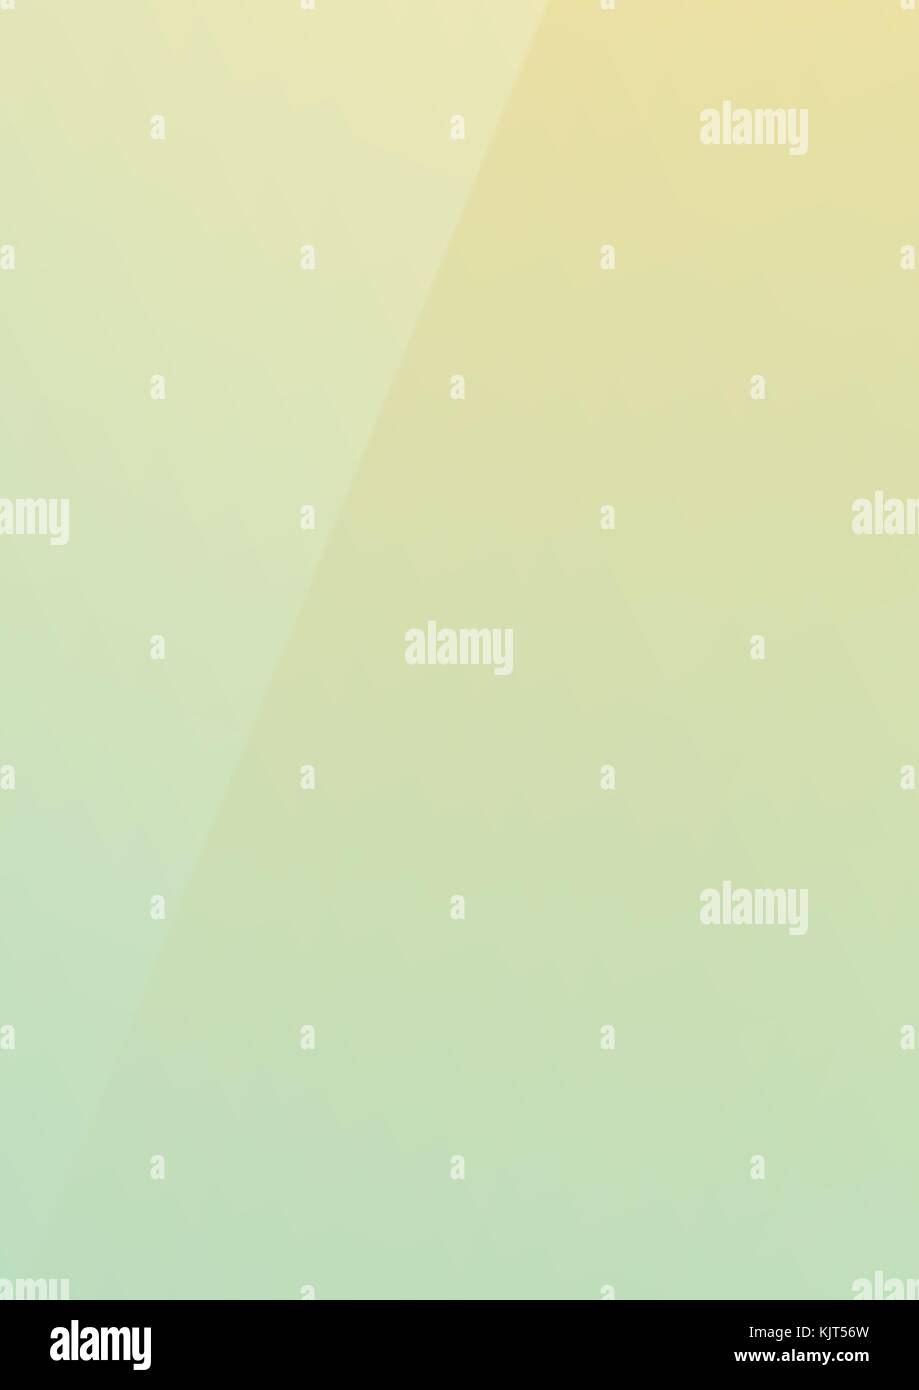 Il gradiente verticale verde limone misto a colori alla moda di sfondo della carta Illustrazione Vettoriale